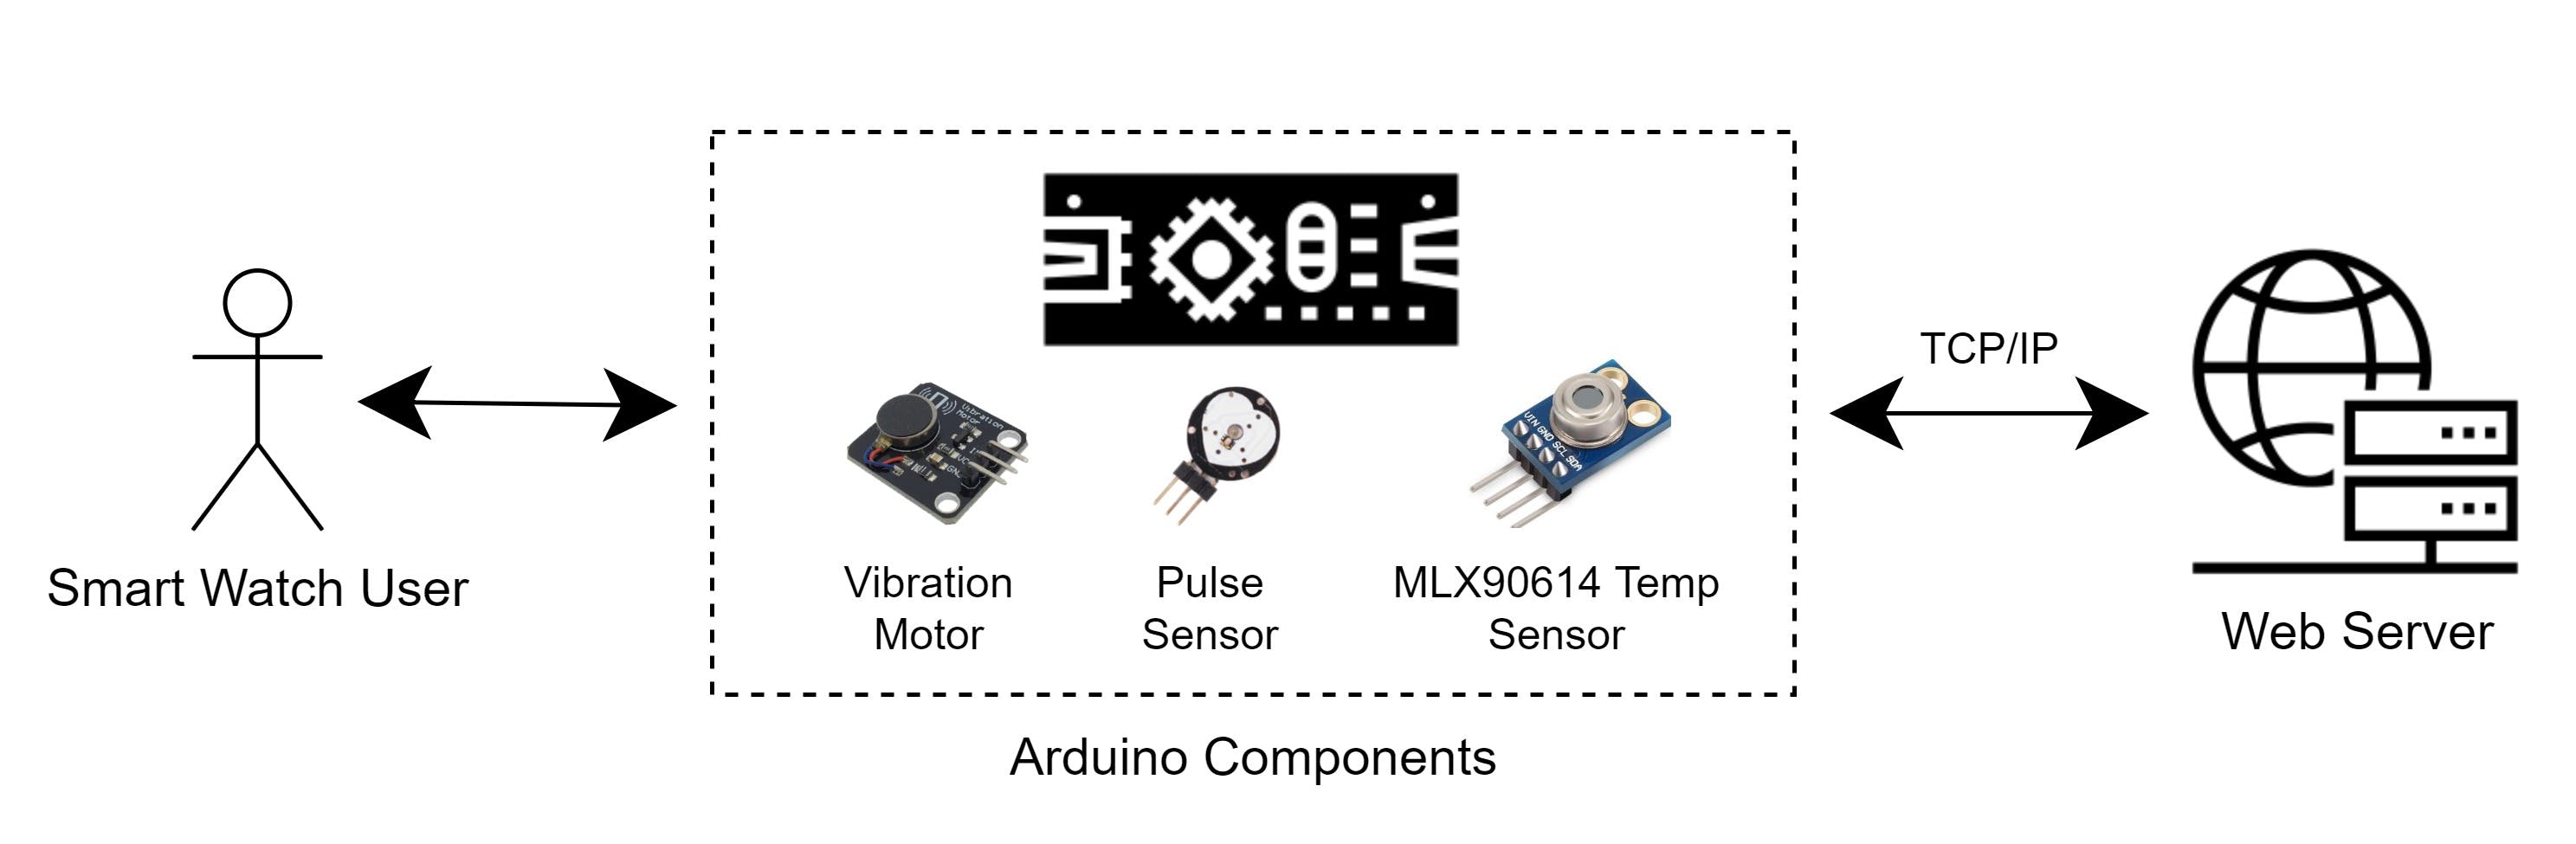 Arduino_Smart_Watch_Architecture.jpg